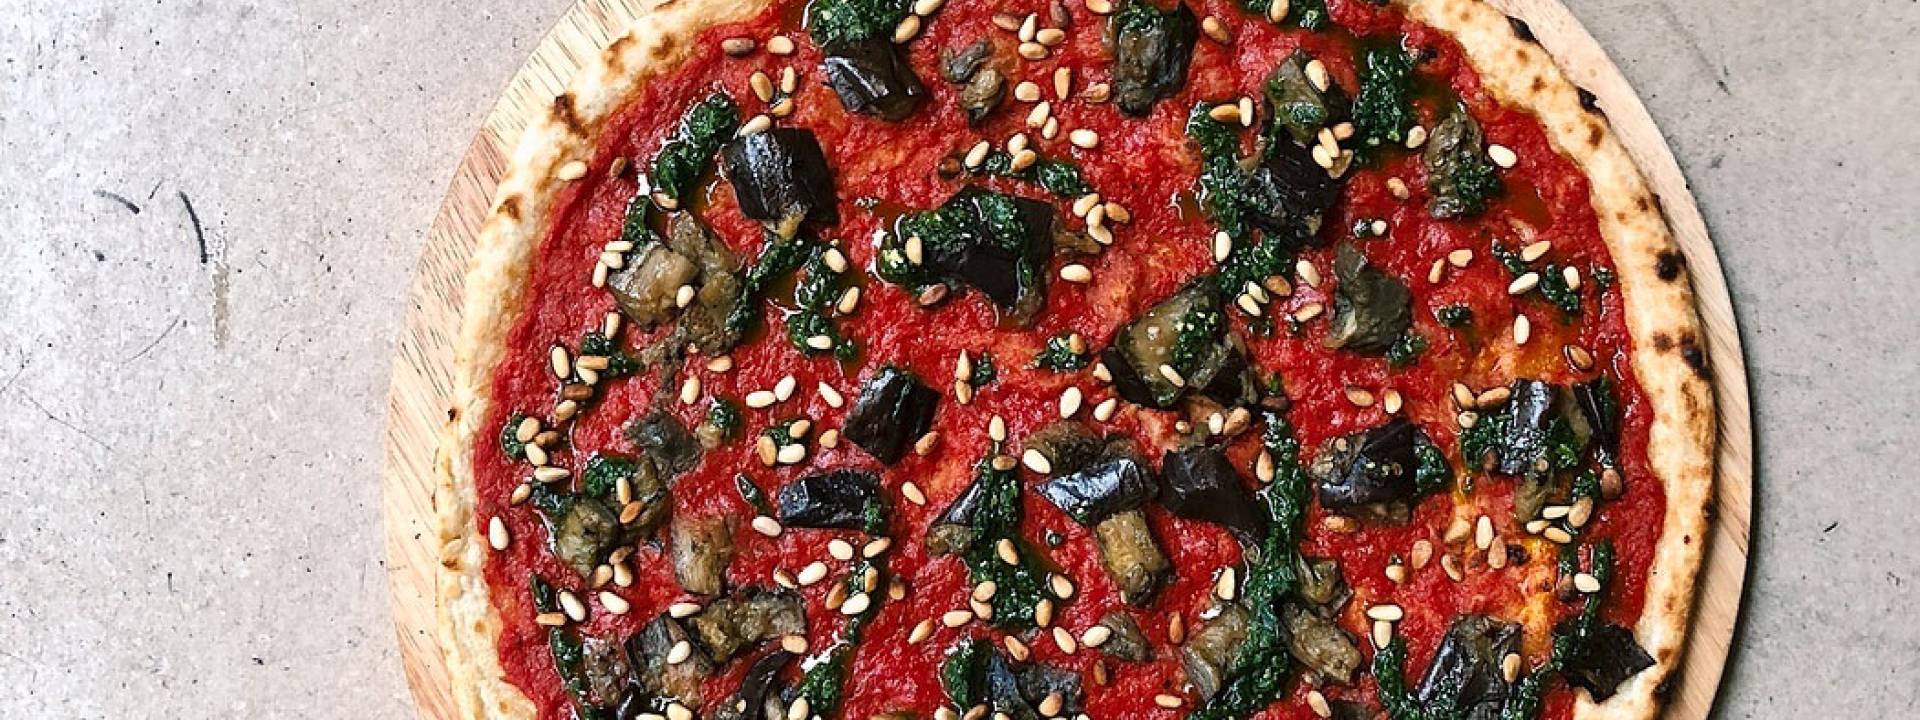 Veganpizza StreetPizza GordonRamsay